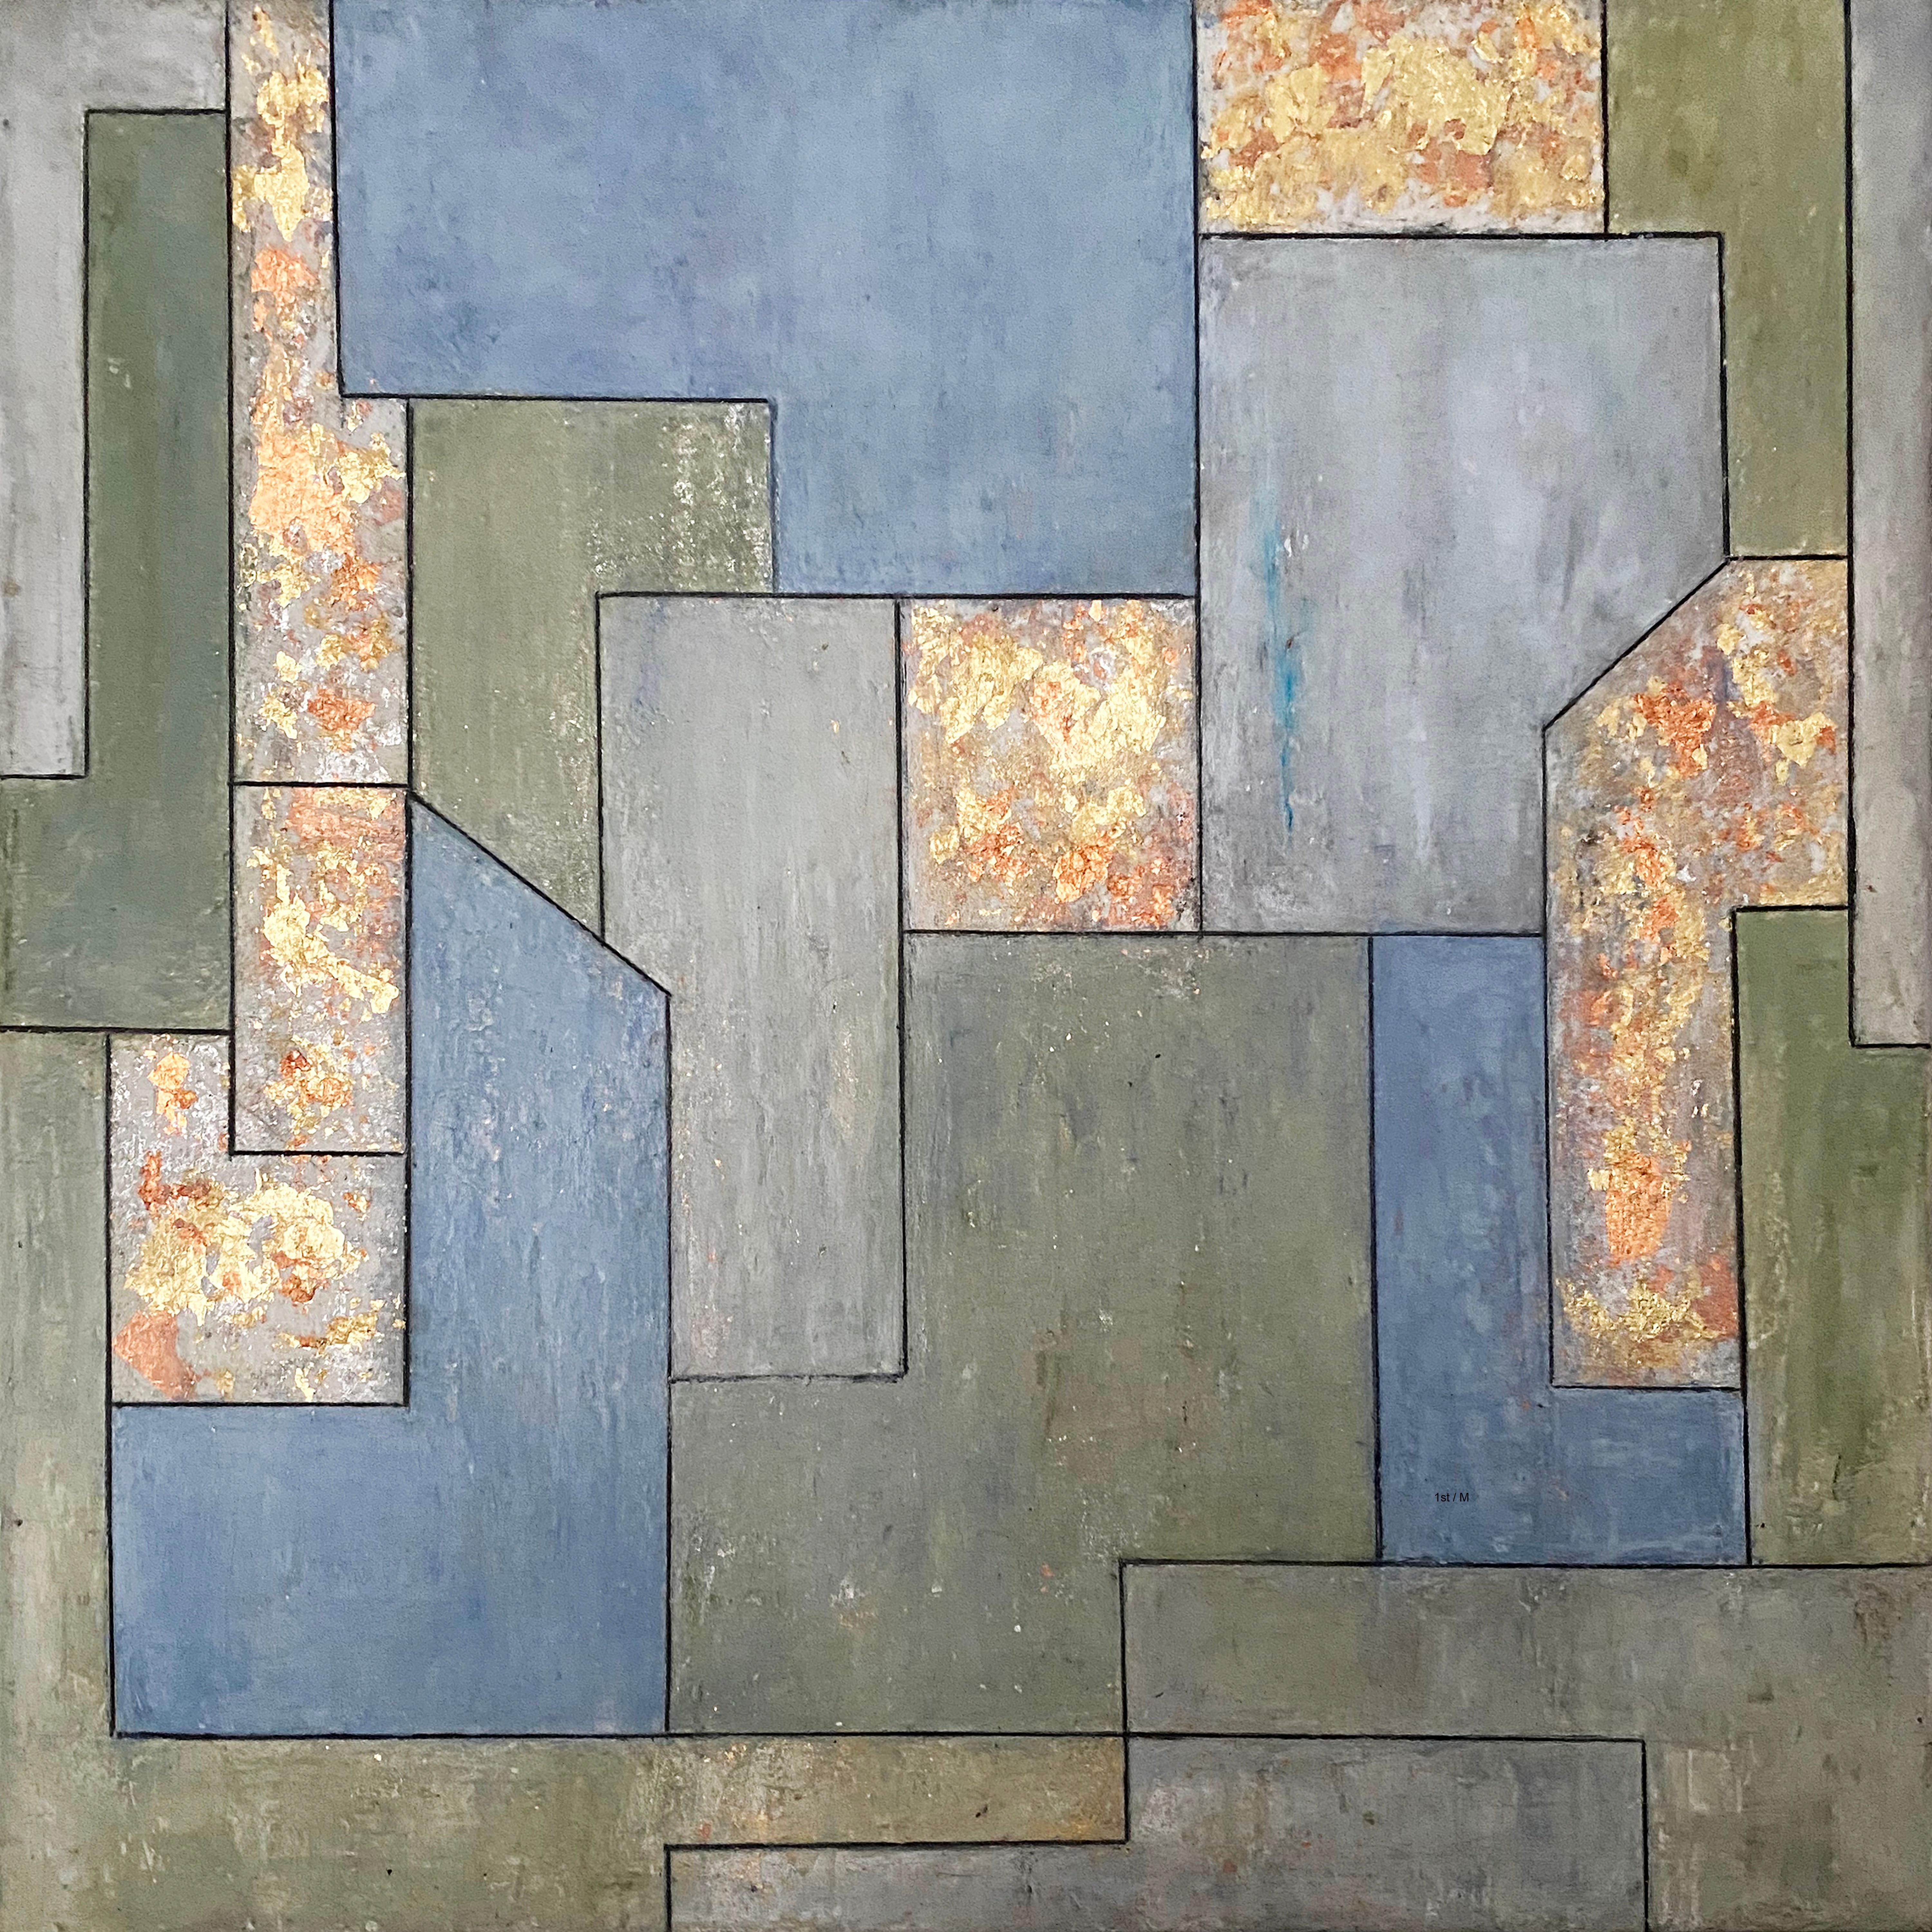 Stephen Cimini Abstract Painting – 22x22x2 Zoll.  l, Blattgold  Geometrische Architektur, zeitgenssisch, Edelstein